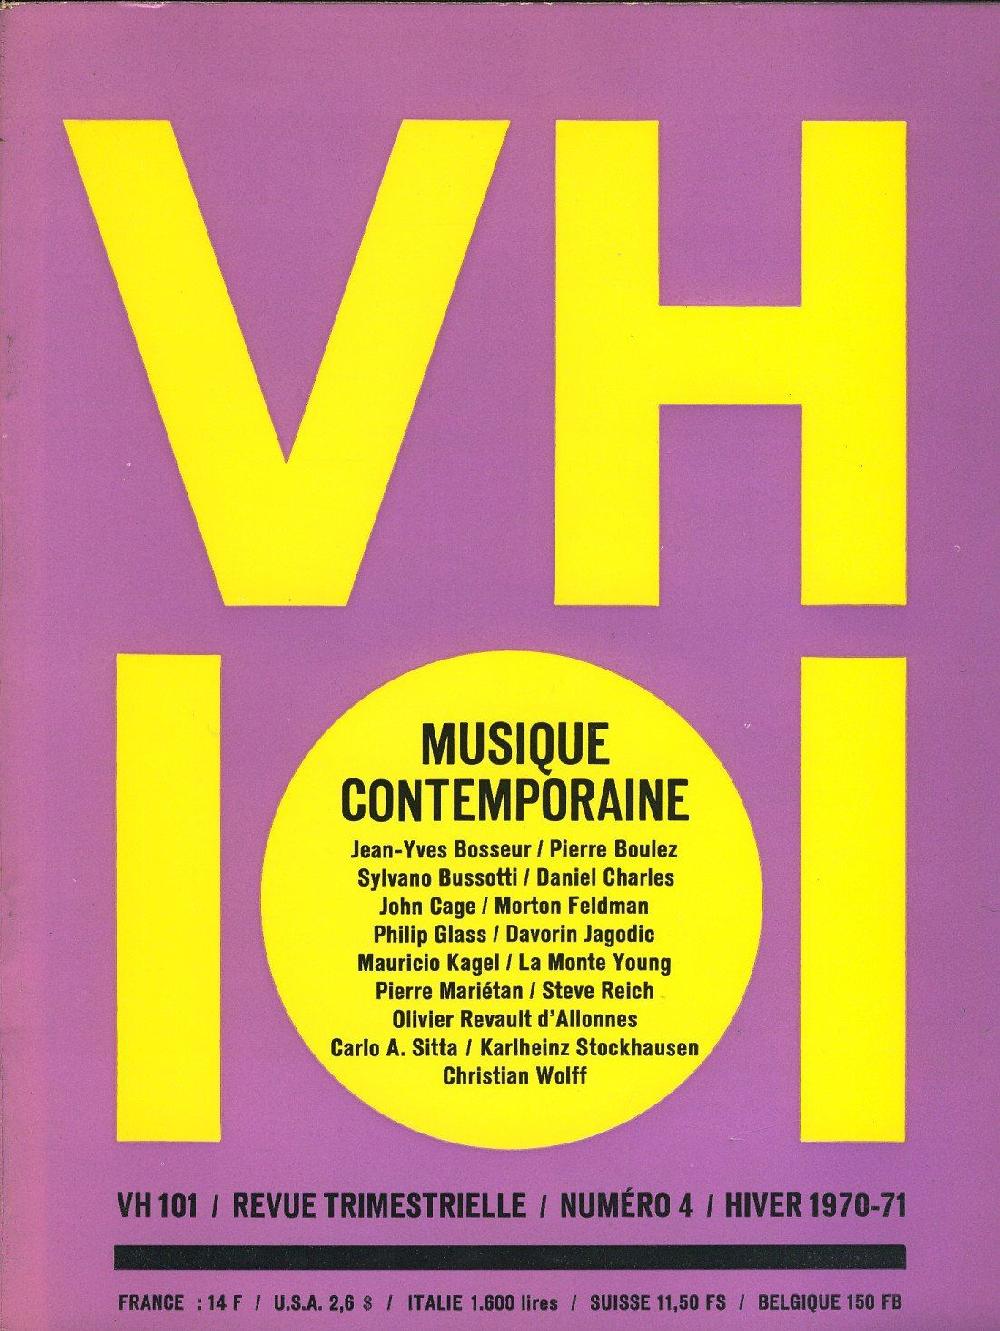 VH101 numro 4 - MUSIQUE CONTEMPORAINE